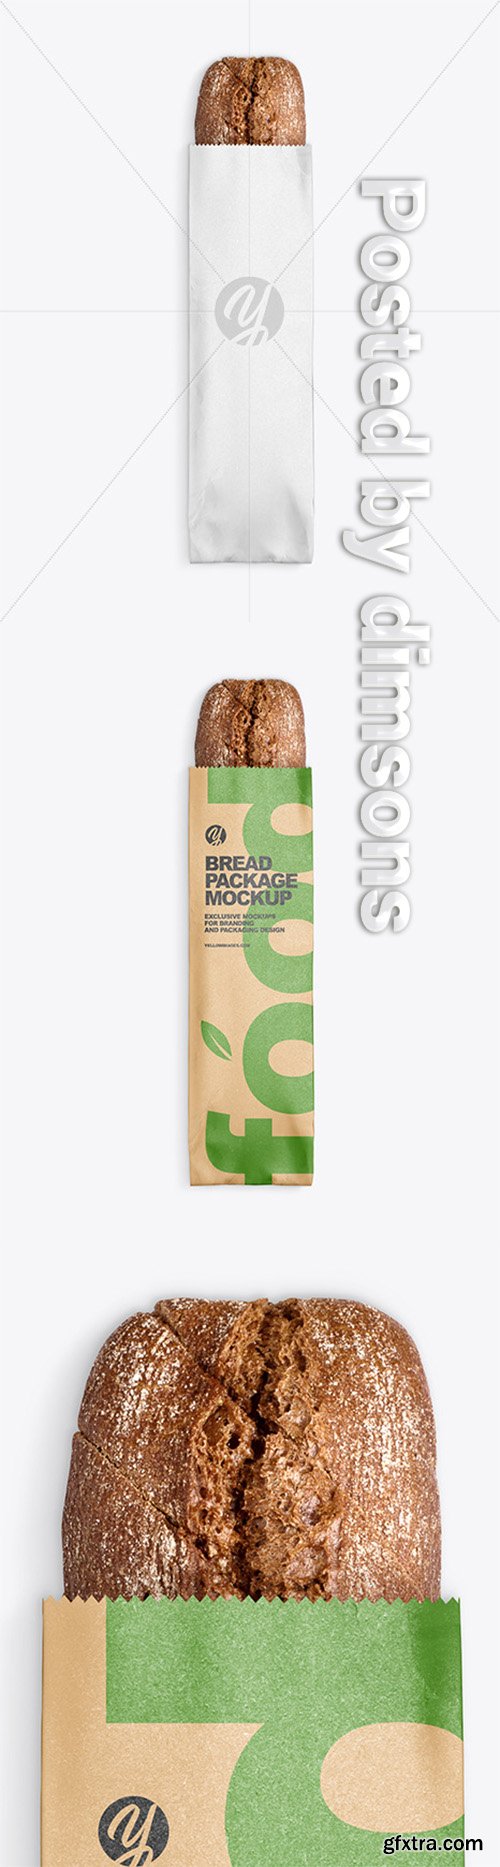 Kraft Package w/ Bread Mockup 52241